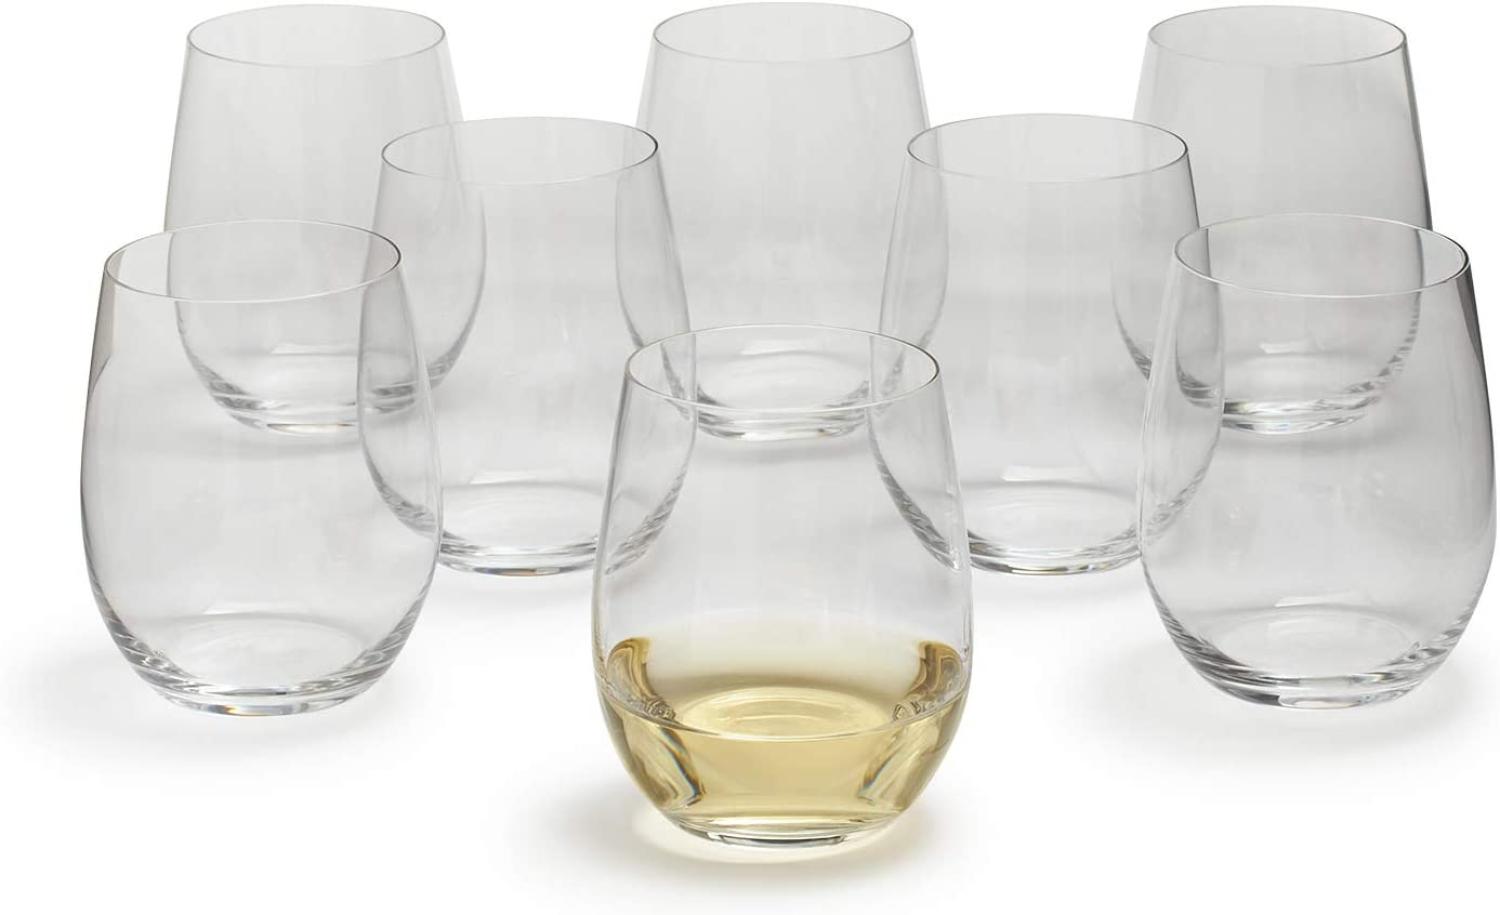 Riedel O Kauf 8 Zahl 6, 8 x Viognier / Chardonnay, Weißweinglas, Weinglas, hochwertiges Glas, 320 ml, 5414/85 Bild 1